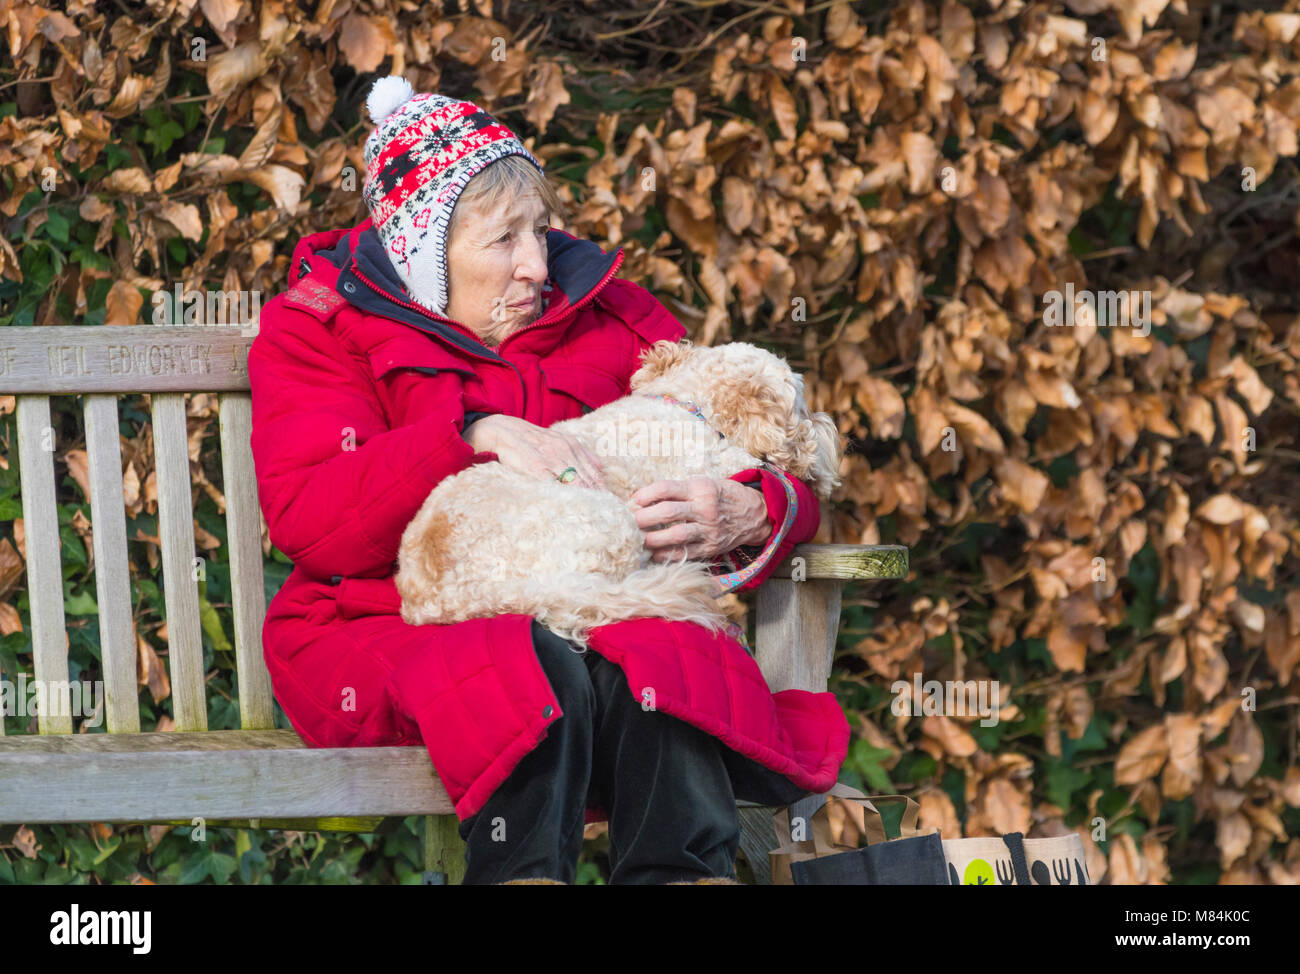 Femme âgée assise sur un banc en hiver portant des vêtements d'hiver, de câlins avec un chien sur ses genoux, au Royaume-Uni. Banque D'Images